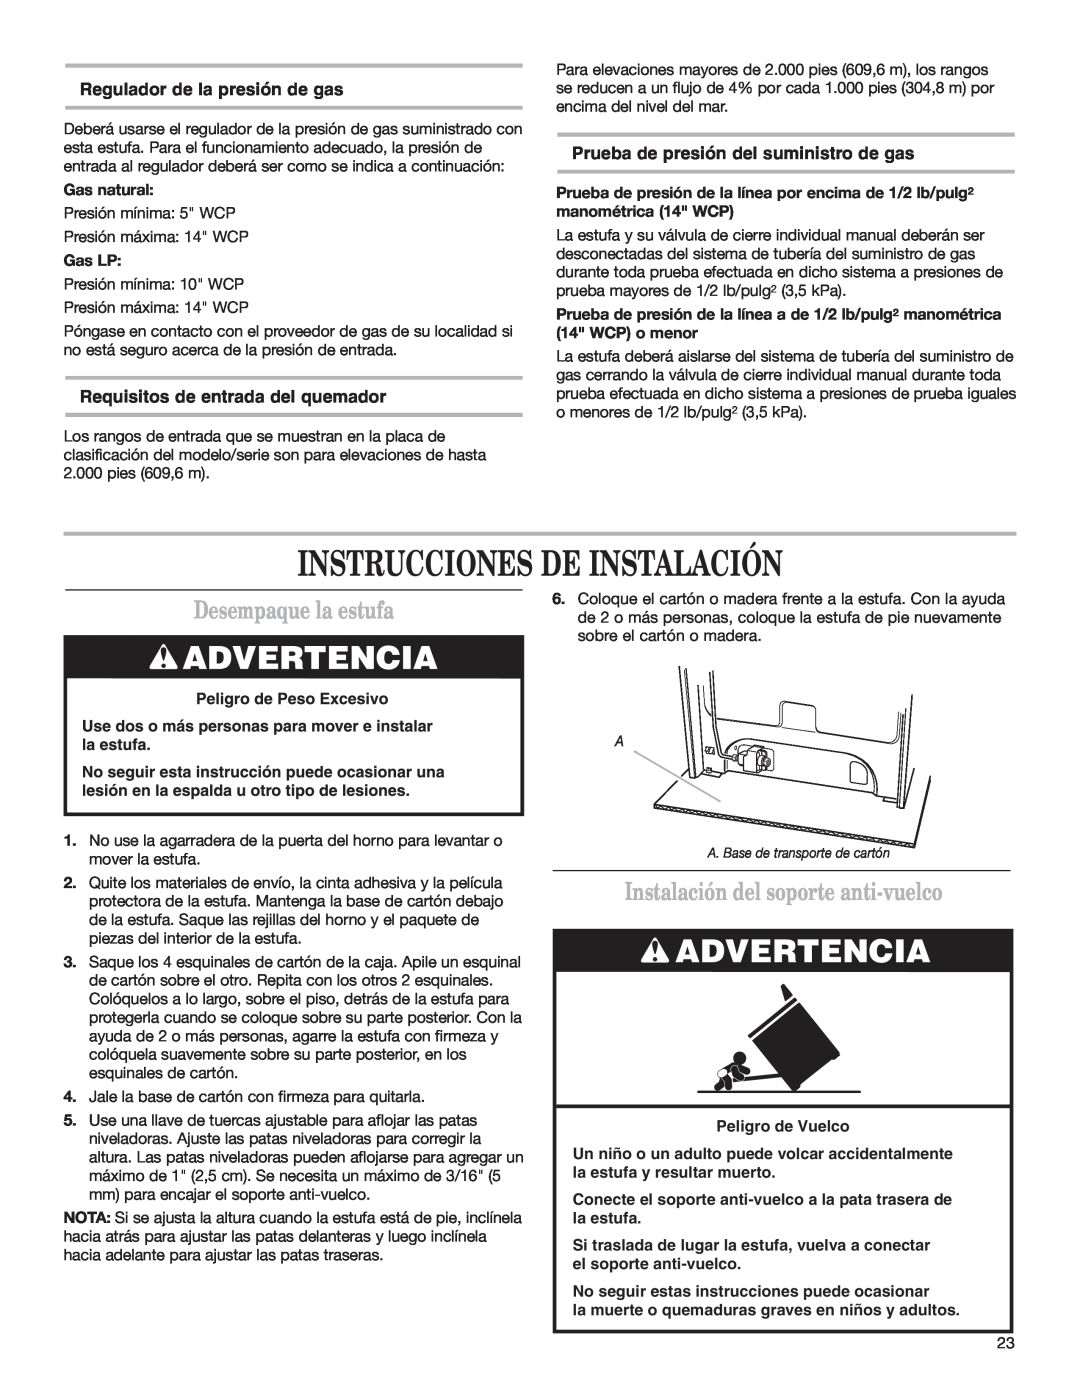 Whirlpool W10173324B Instrucciones De Instalación, Desempaque la estufa, Instalación del soporte anti-vuelco, Gas LP 